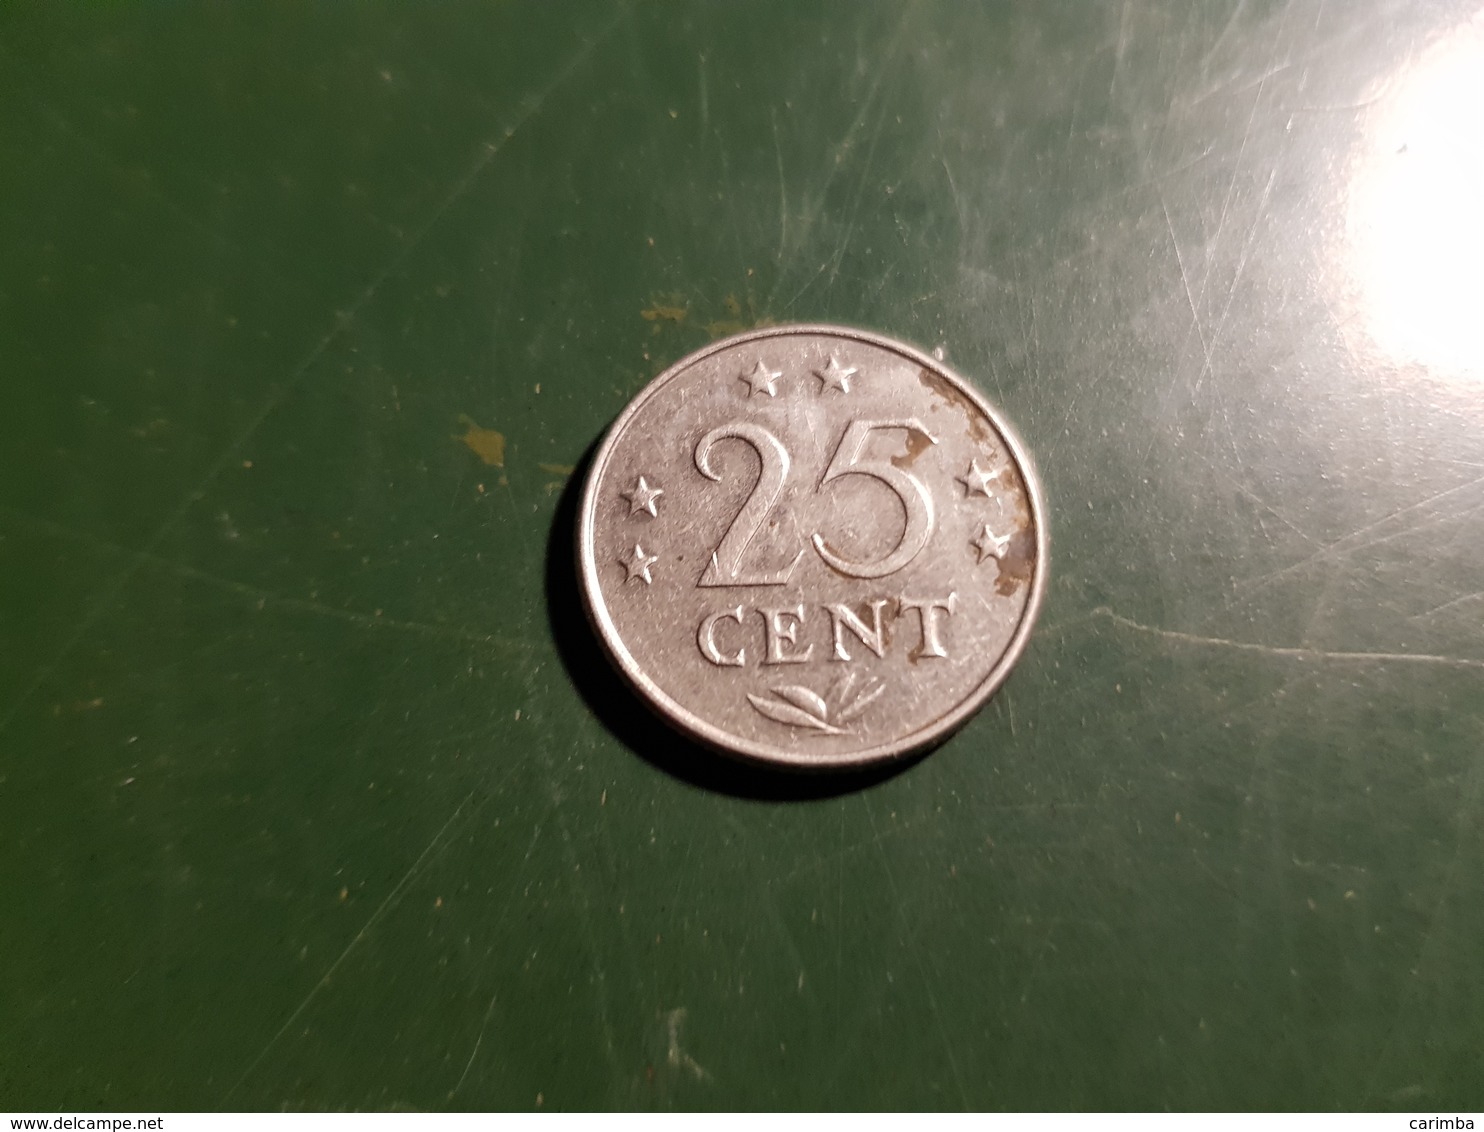 25 Cents 1970 - Niederländische Antillen